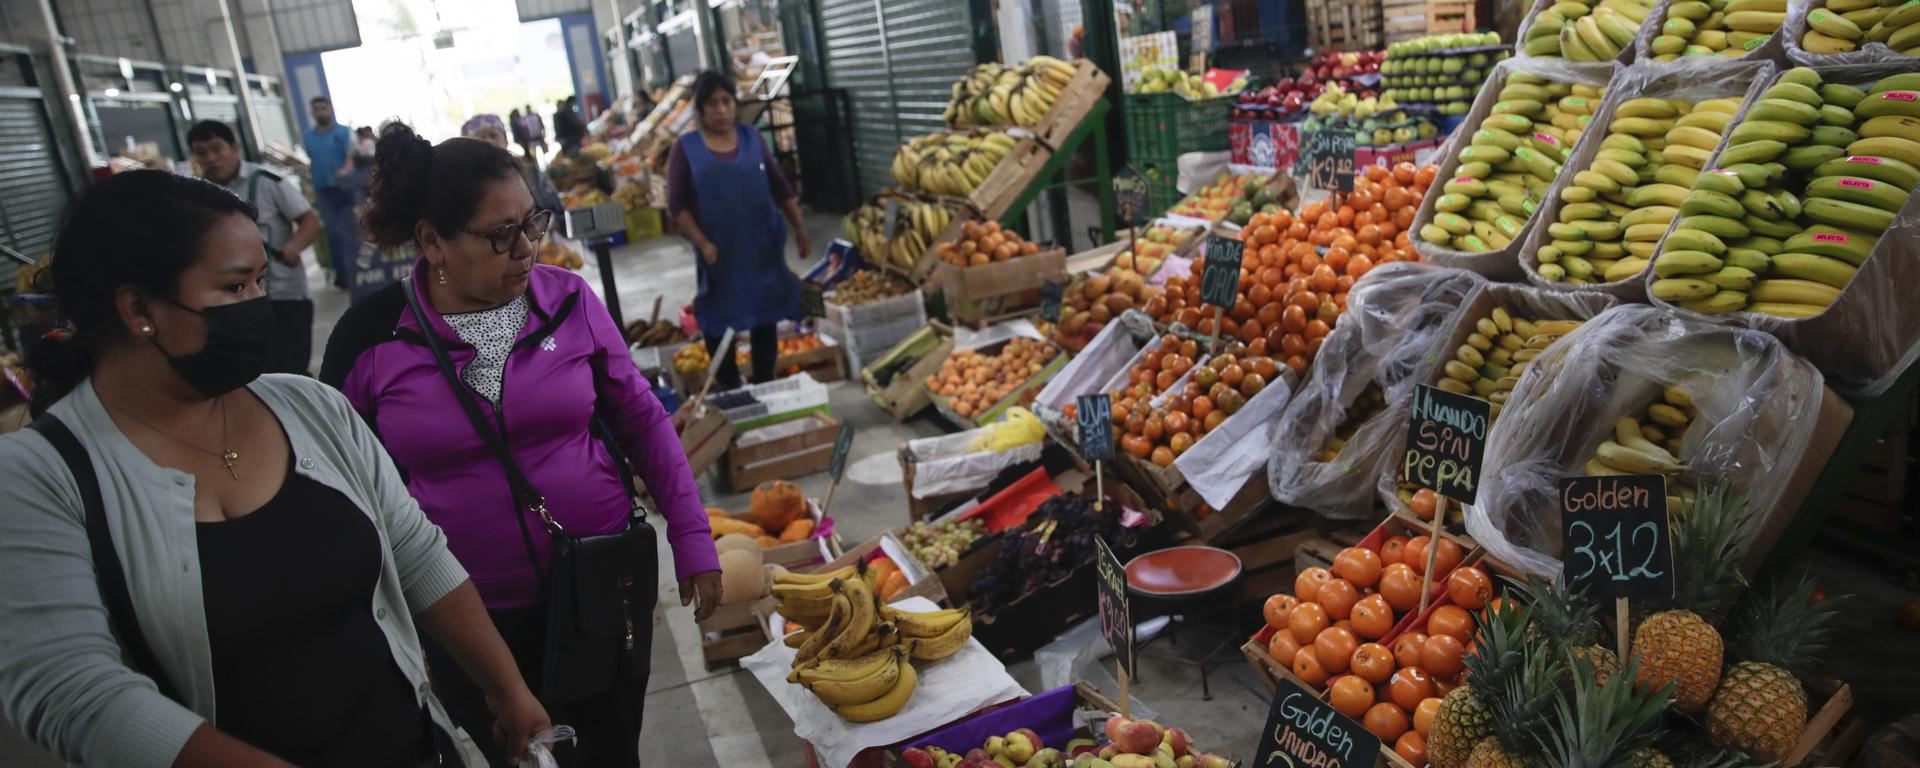 Mayor abastecimiento en los mercados de Lima reduce precios de alimentos